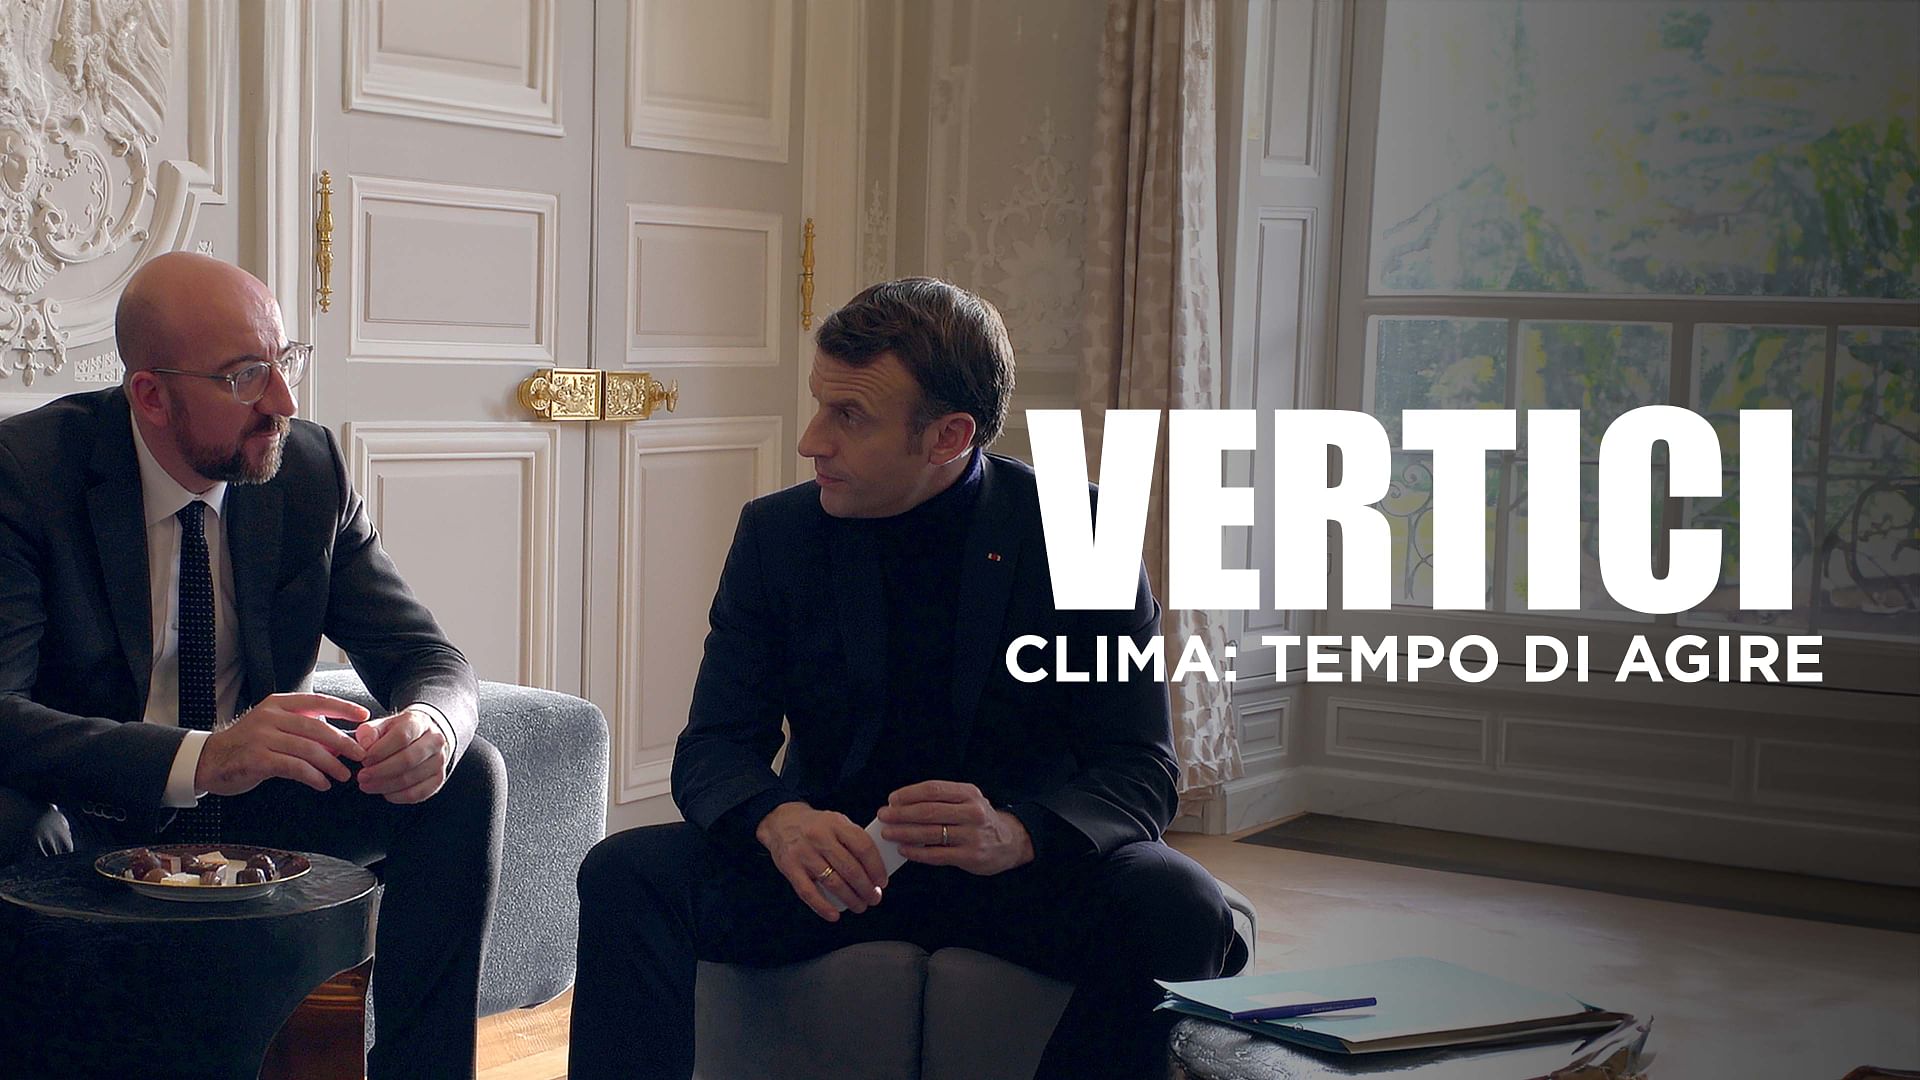 Vertici - Il dietro le quinte delle trattative europee - Clima: tempo di agire